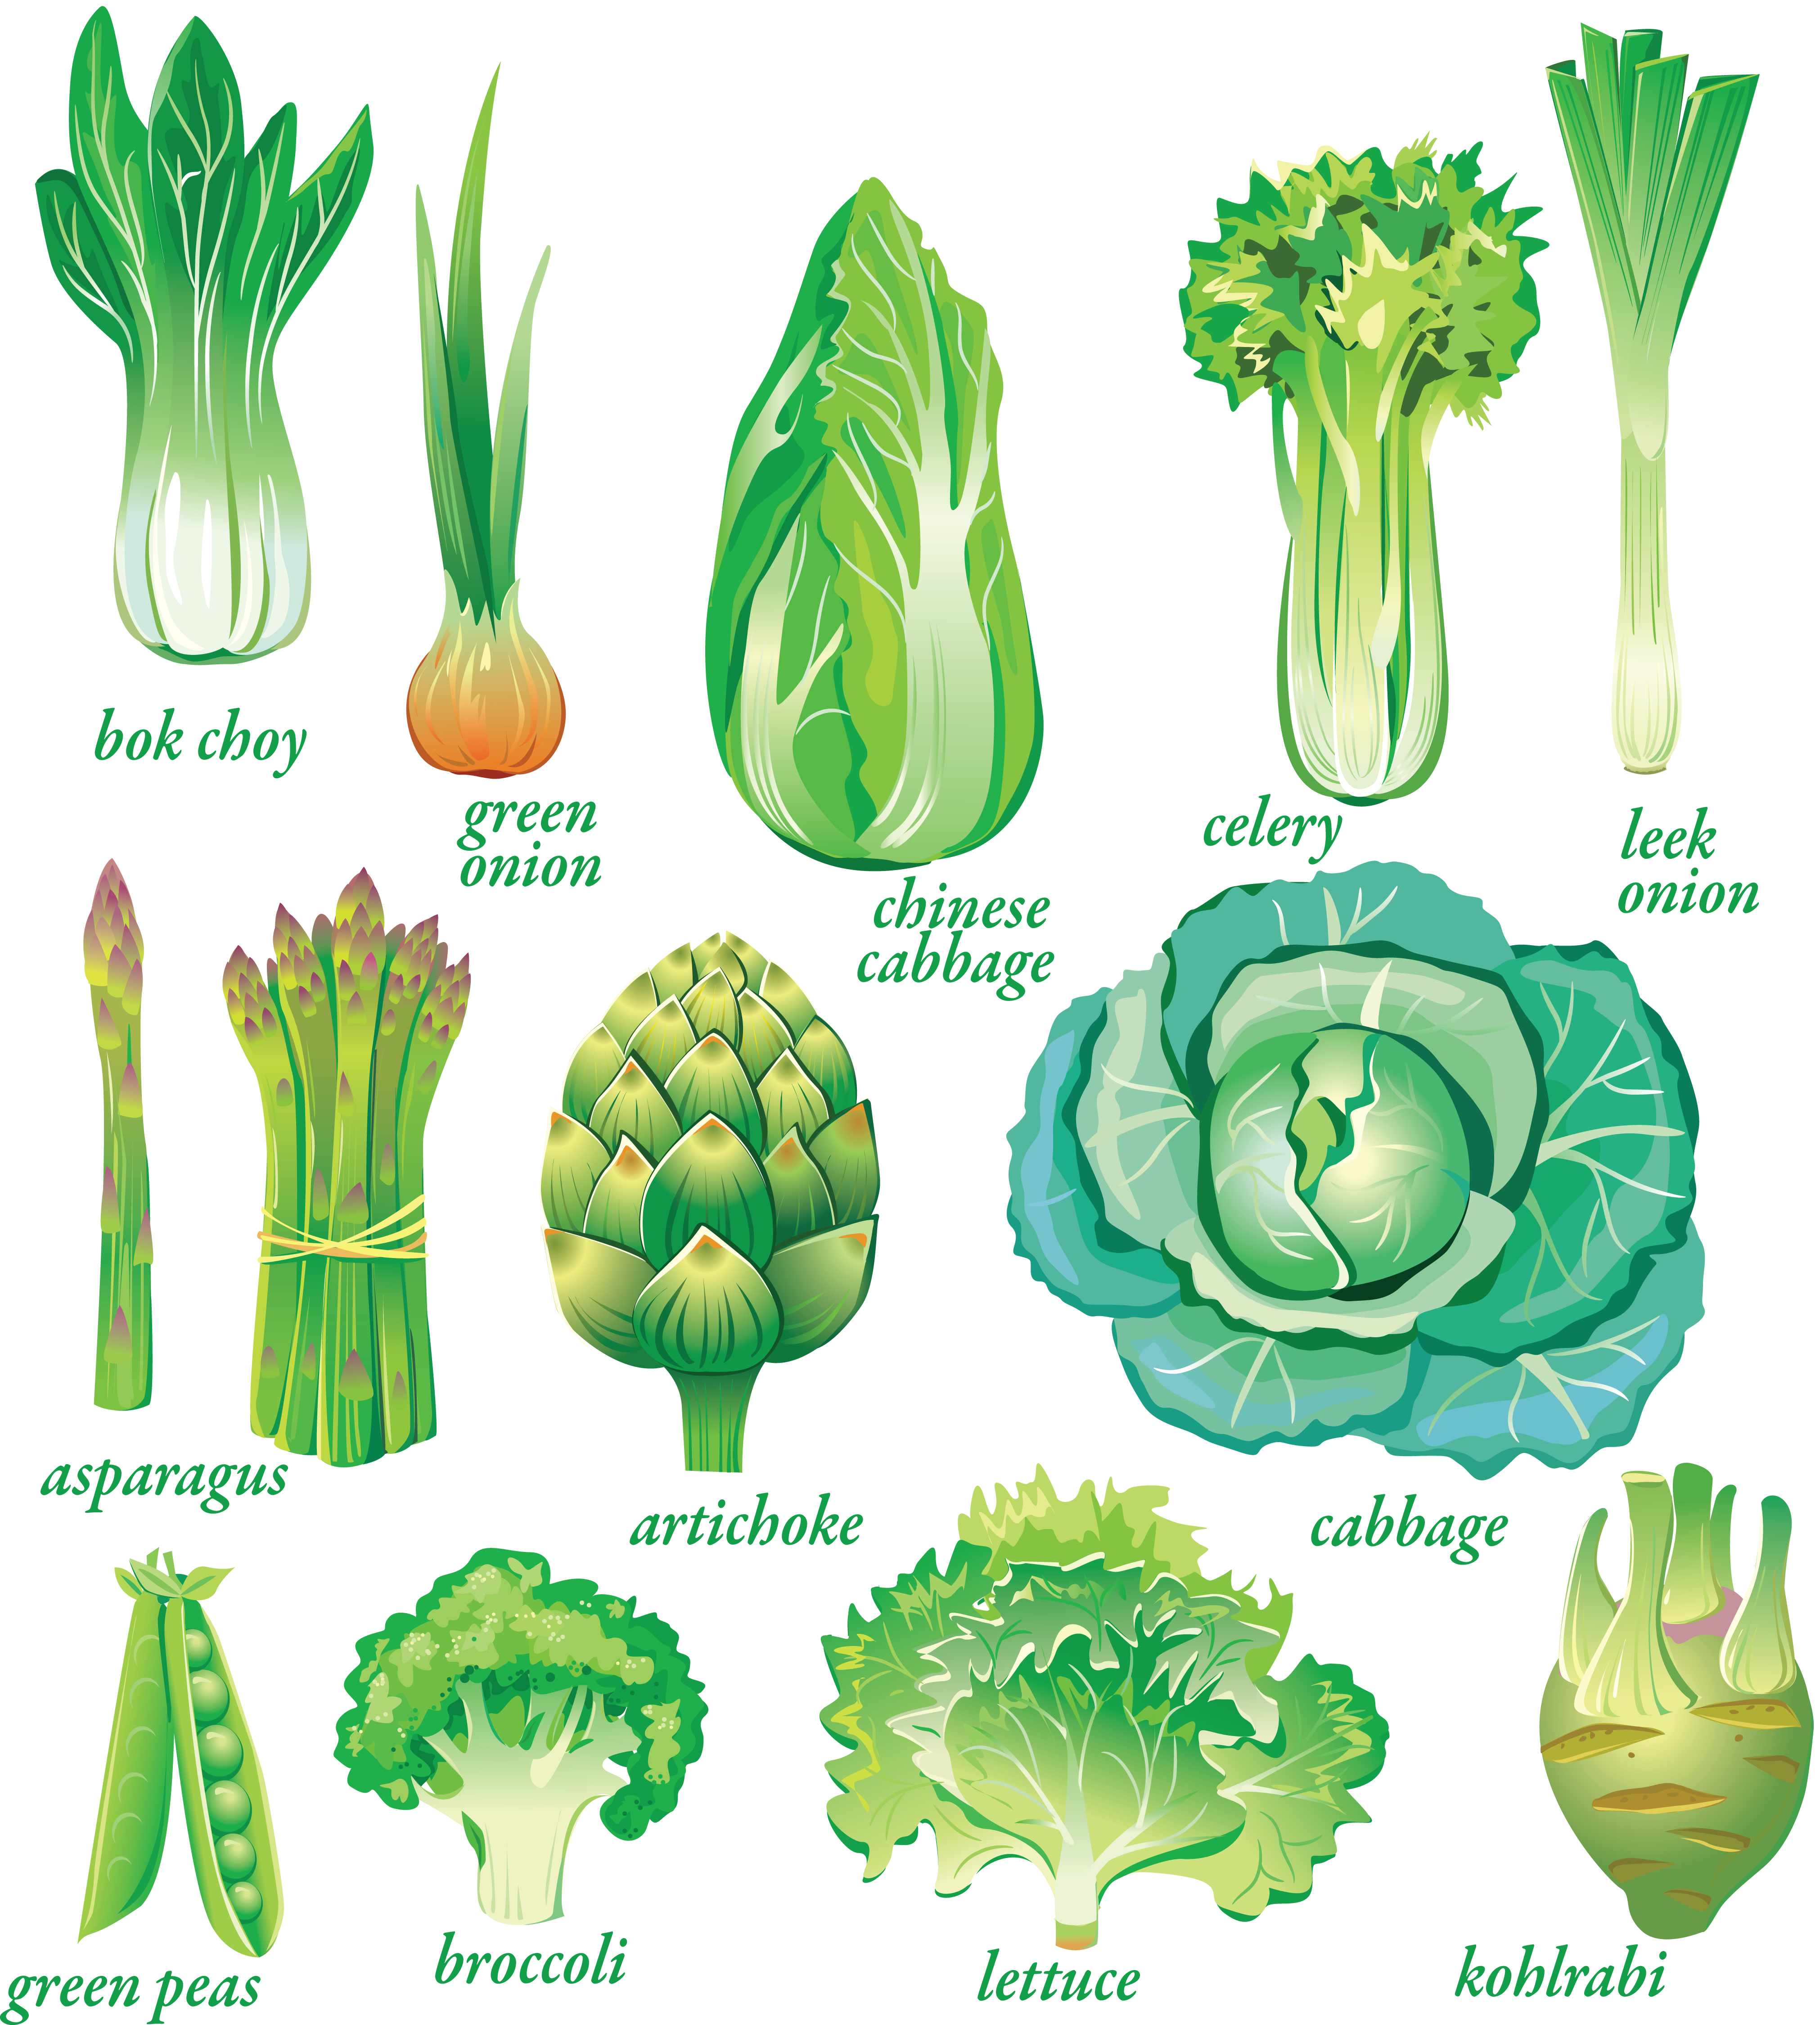 Зелень фото для салатов